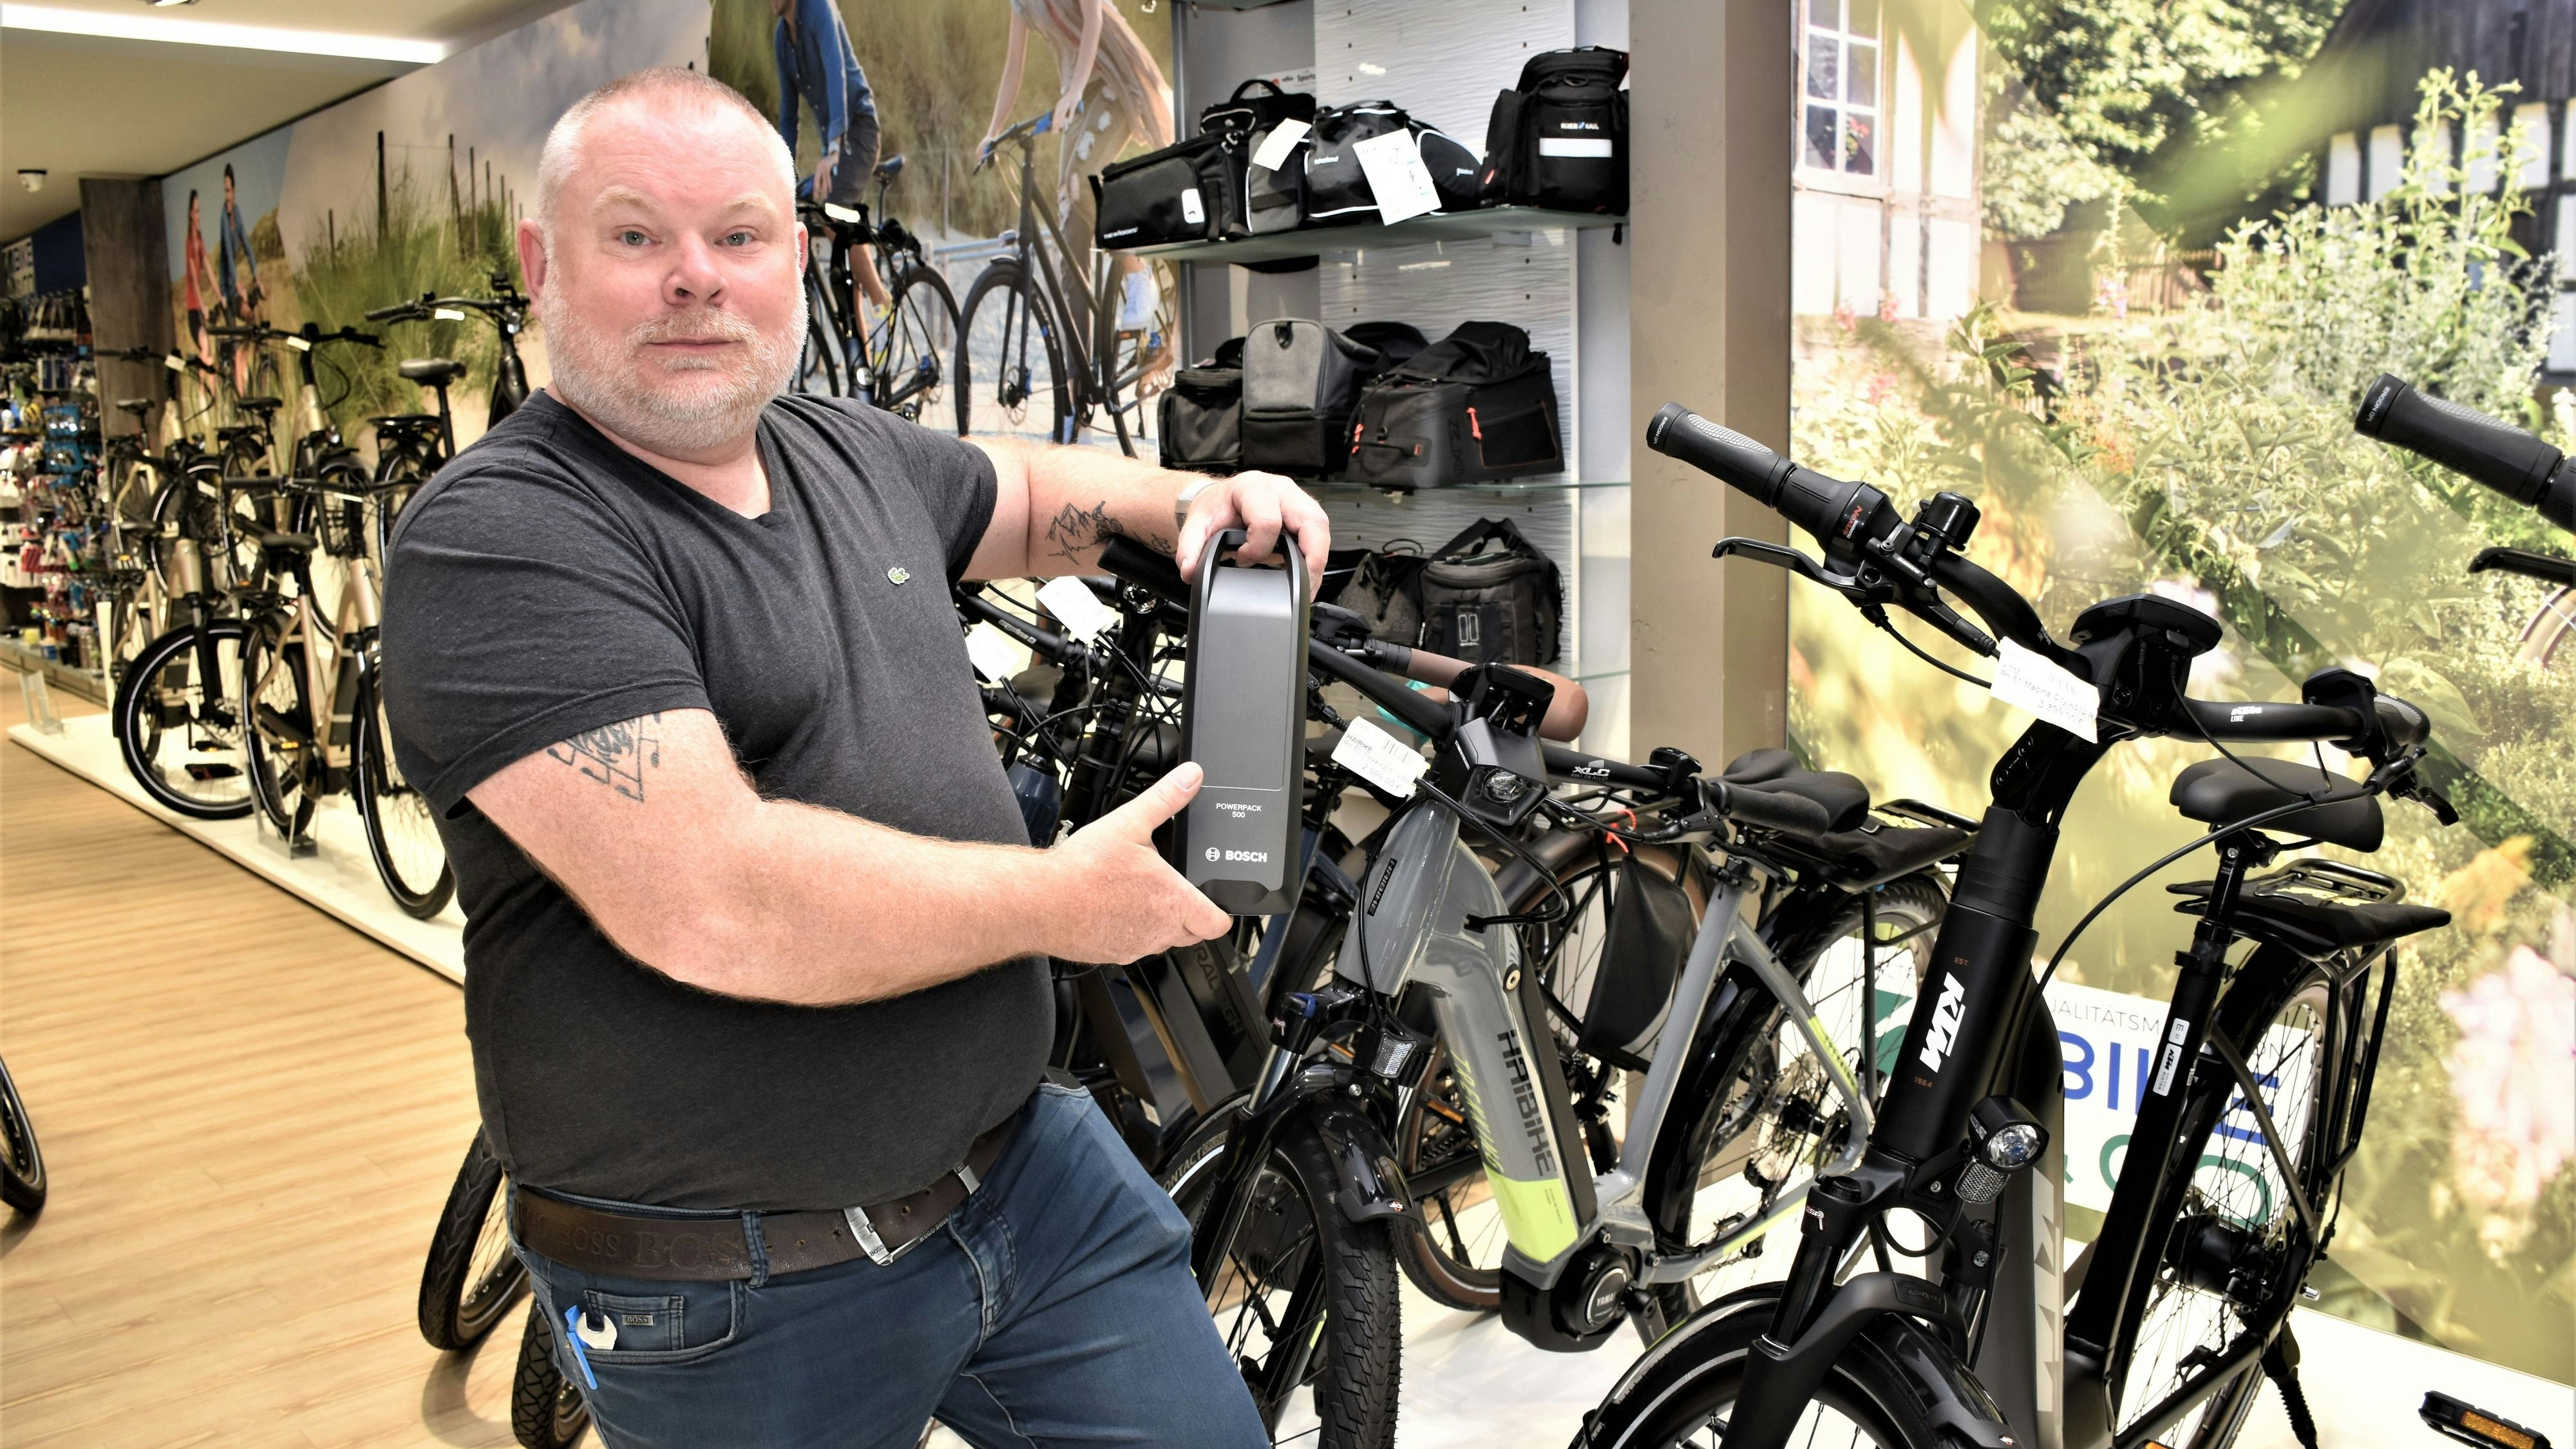 Der Mangel an Fahrrad-Akkus ist real: Der Cloppenburger Fachhändler Frank Belling zeigt eine Bosch-Batterie. Lange Lieferzeiten für diese Akkus verärgern Kunden und Fahrradhandel. Foto: Kühn